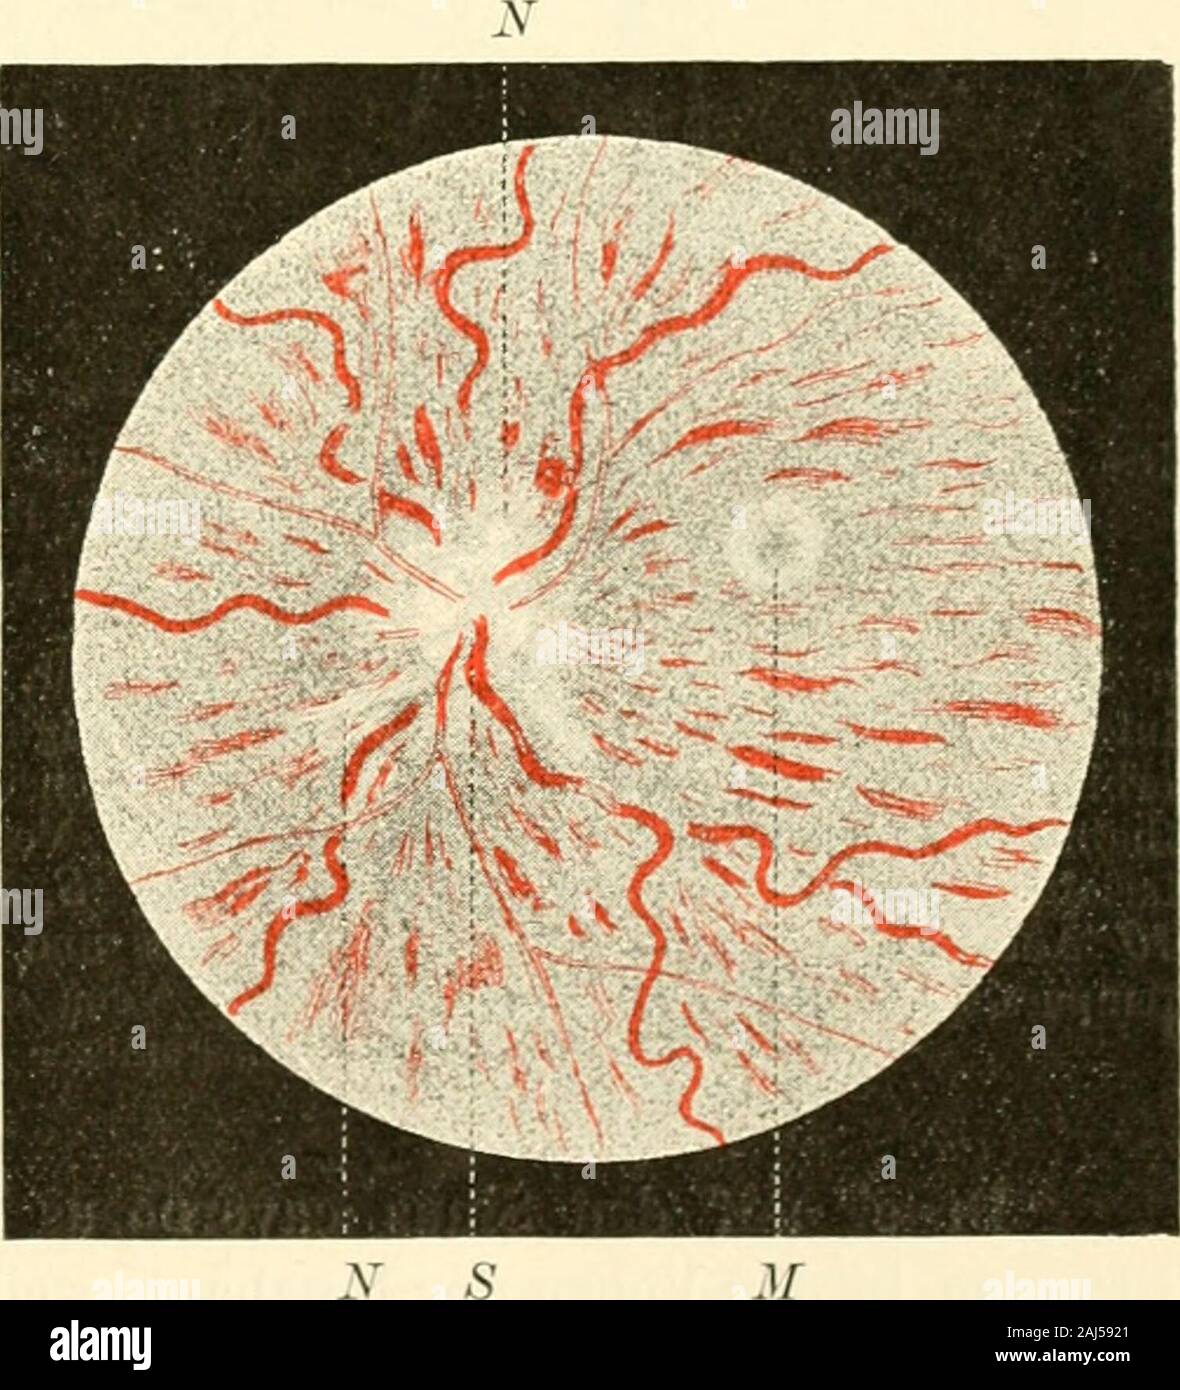 Die Neurologie des Auges ein Handbuch für Nerven- und AugenÃ¤rzte. ¶Tet, bin on the left side Auge ein-zelne Extravasieren in der NÃ¤er des Seh-nervenrandes. Makroskopische Betrachtung zeigte undmikroskopische dasBild einer Eiterigen Meningitis des Seh-nerven, Ansammlung von EiterkÃ¶rper-chen in der Höhle subarachnoidalen RÃ¤umenam reichlichsten, dann in der Pia, imsubduralen RÃ¤ume und in der Dural-scheide Sterben. In der Höhle PialfortsÃ¤tzen warenbald ungemein strotzend mit Blut ge-fÃ¼llte GefÃ¤sse wahrzunehmen, hÃ¤ufigeraber Extravasieren, welche das Bindege-webe der PialfortsÃ¤tze vollstÃ¤ndig ver-deckten. Je mehr ma Stockfoto